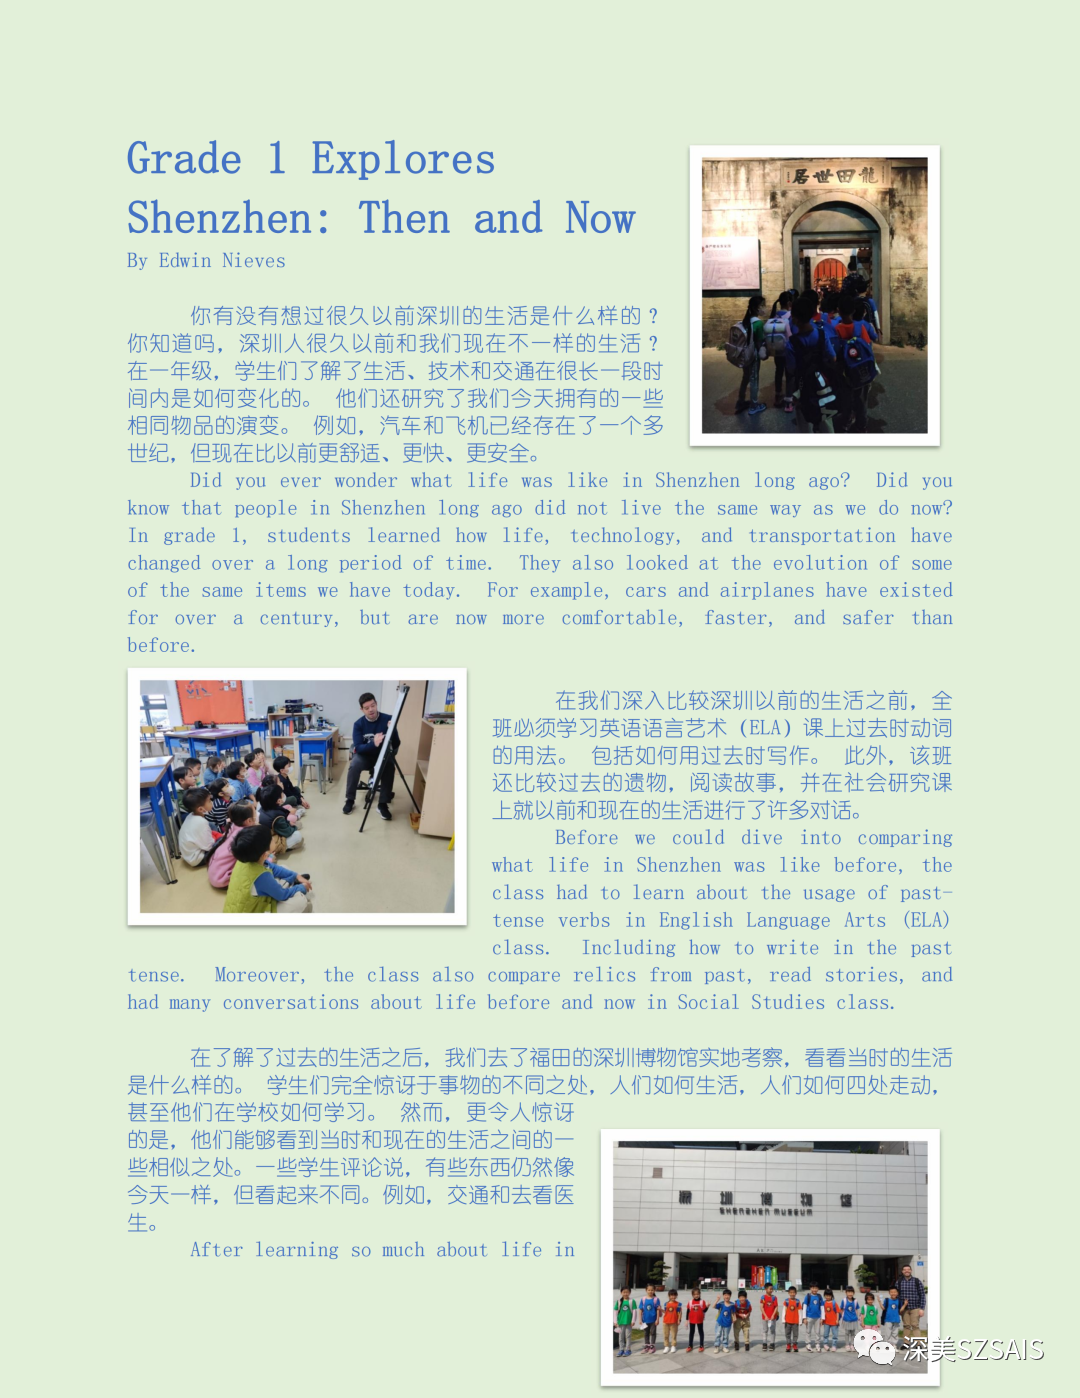 深美一周课堂——深圳的古往今来|SAIS Classes-Explores Shenzhen: Then and Now